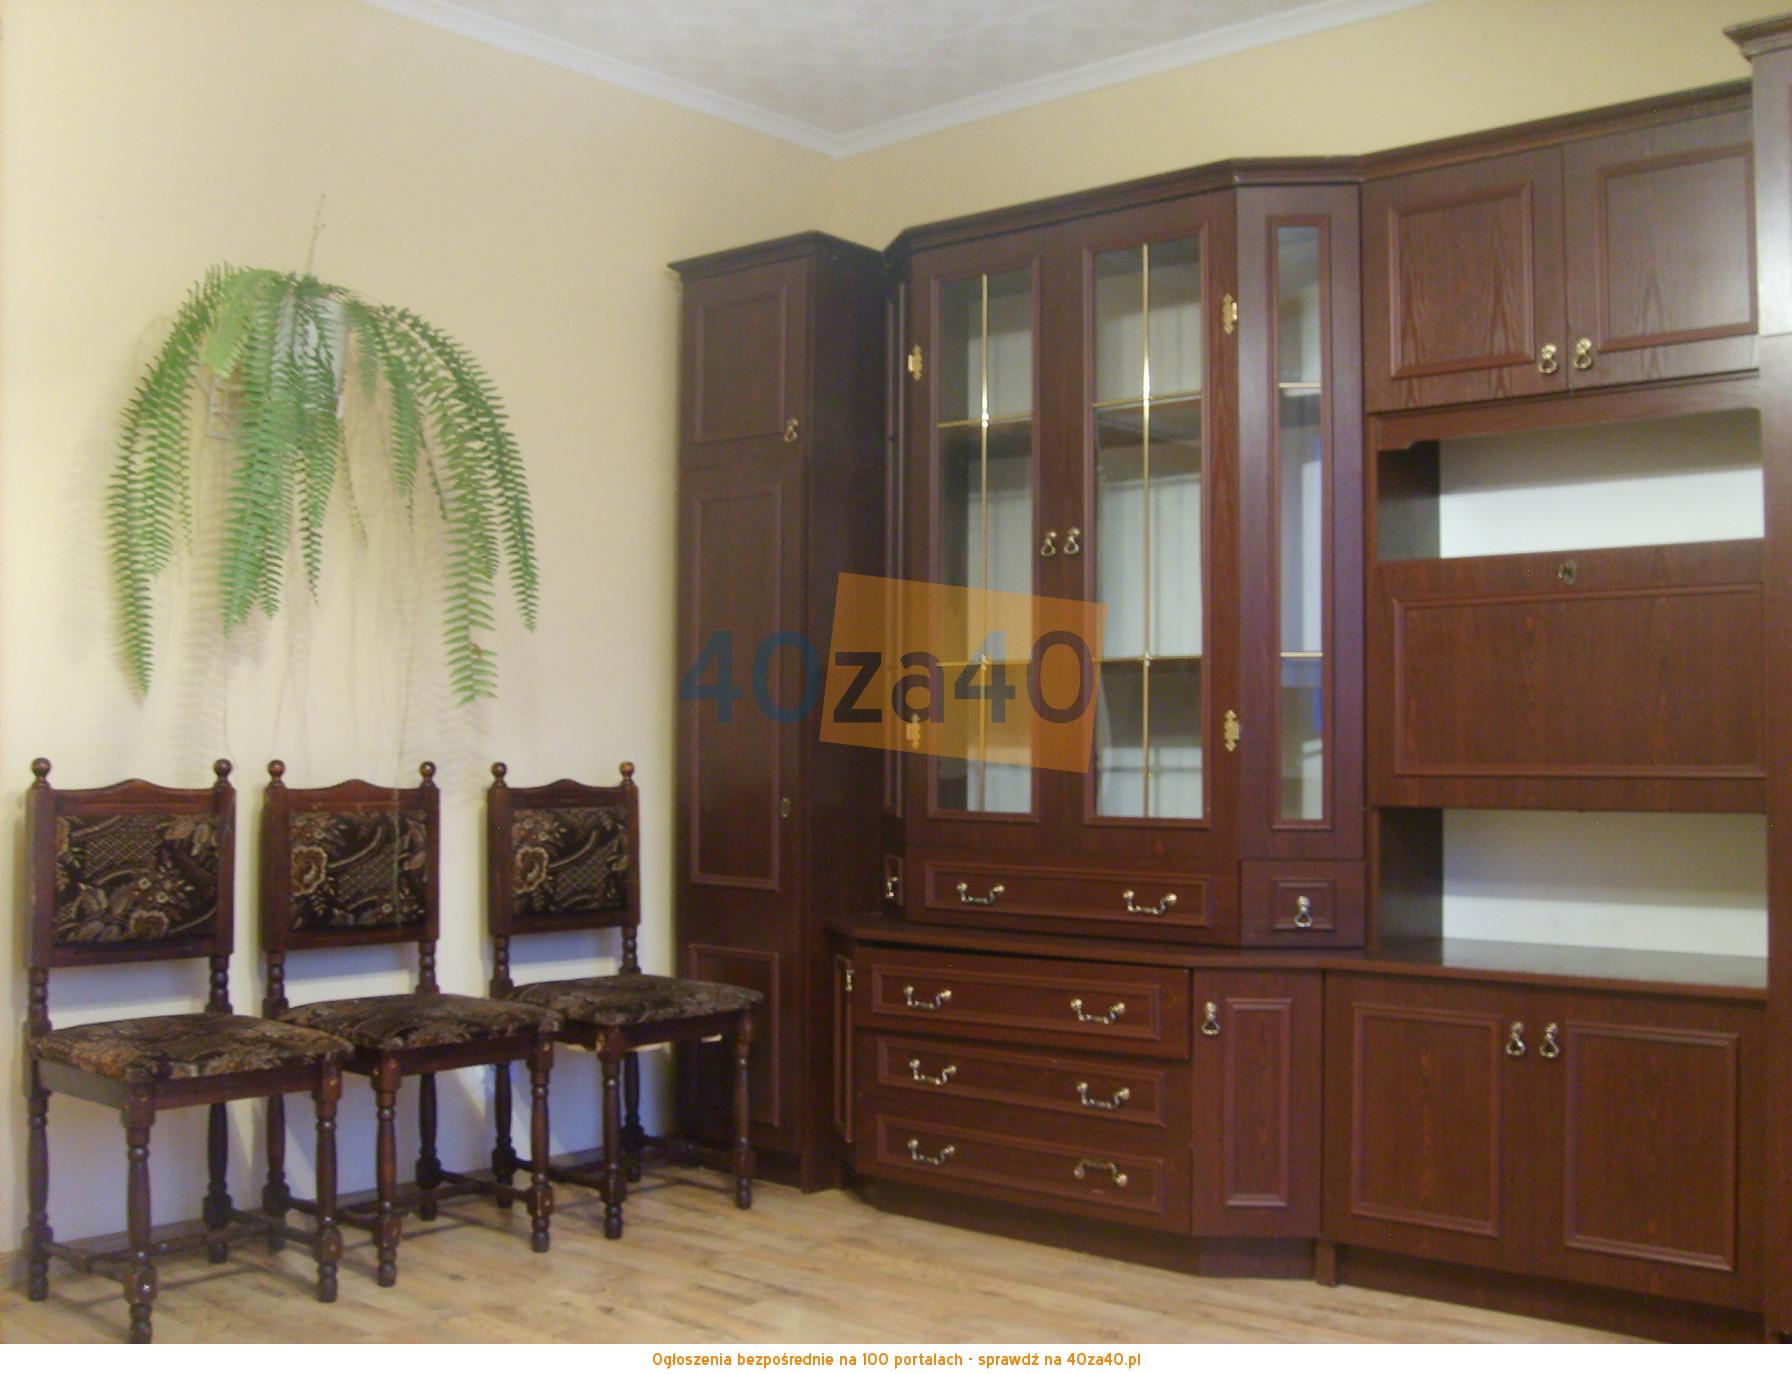 Mieszkanie do wynajęcia, pokoje: 1, cena: 800,00 PLN, Zabrze, kontakt: +48691456859